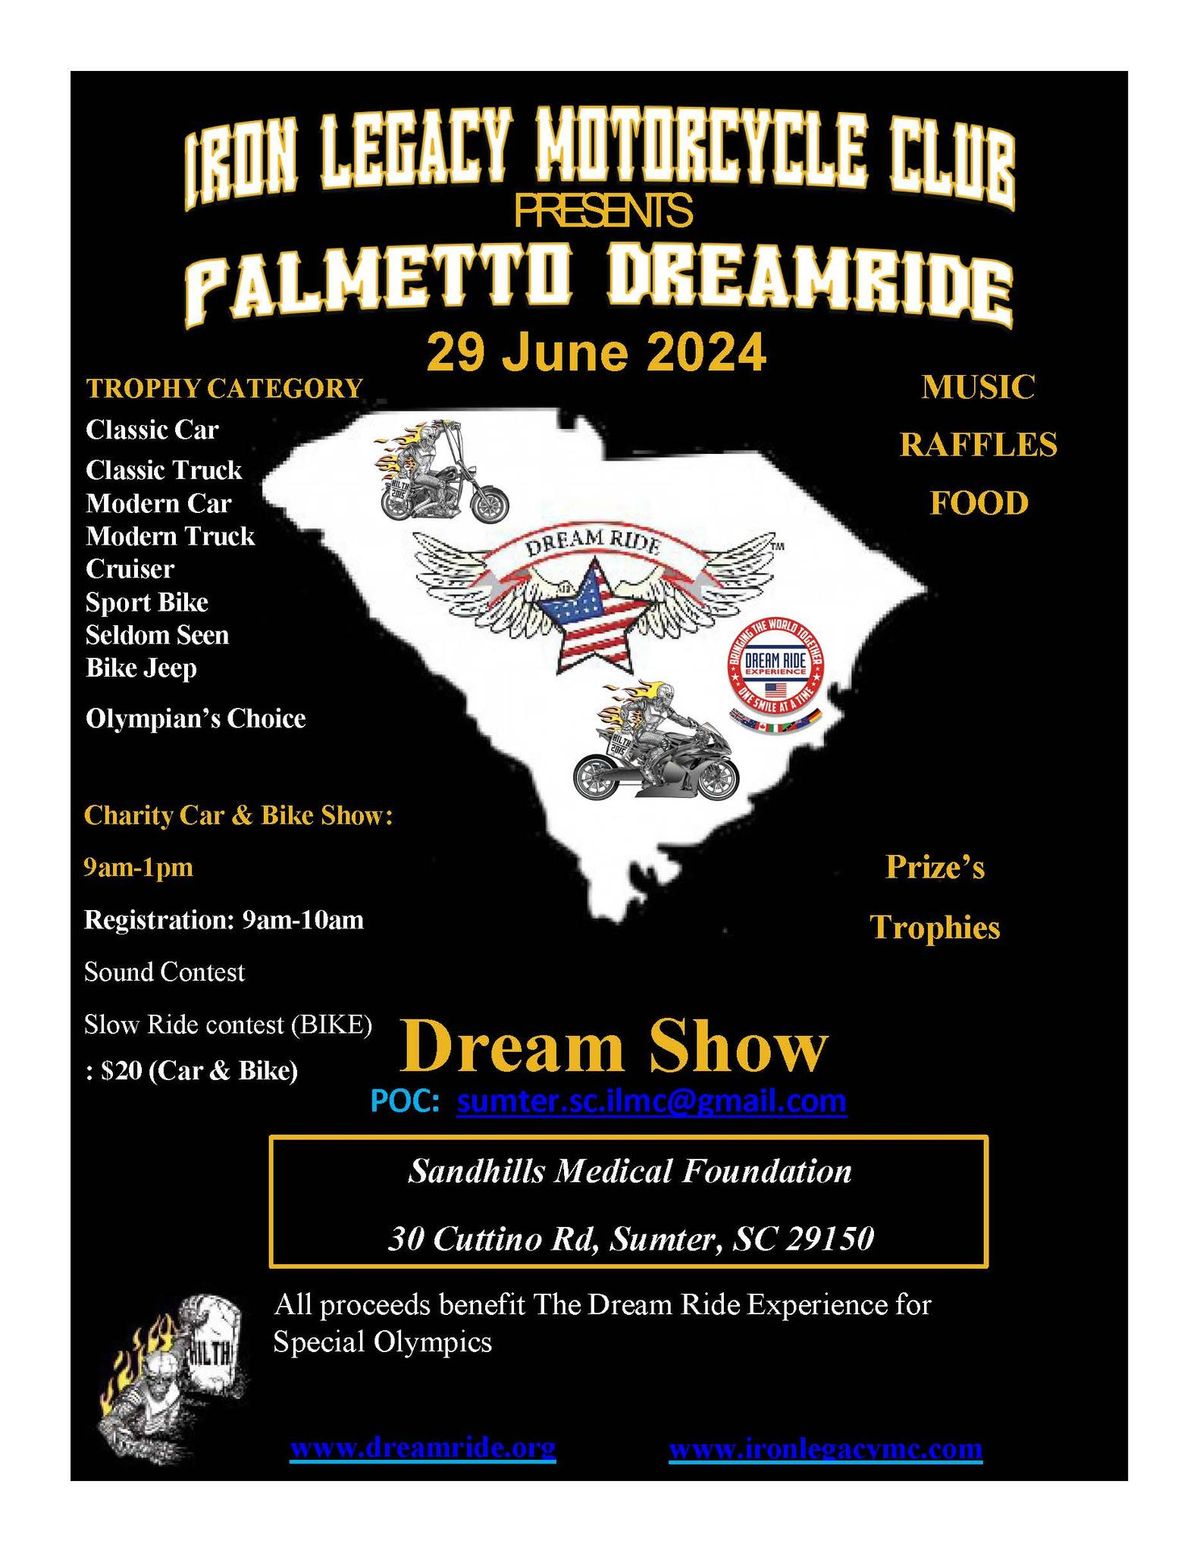 Palmetto DreamRide Car & Bike Show